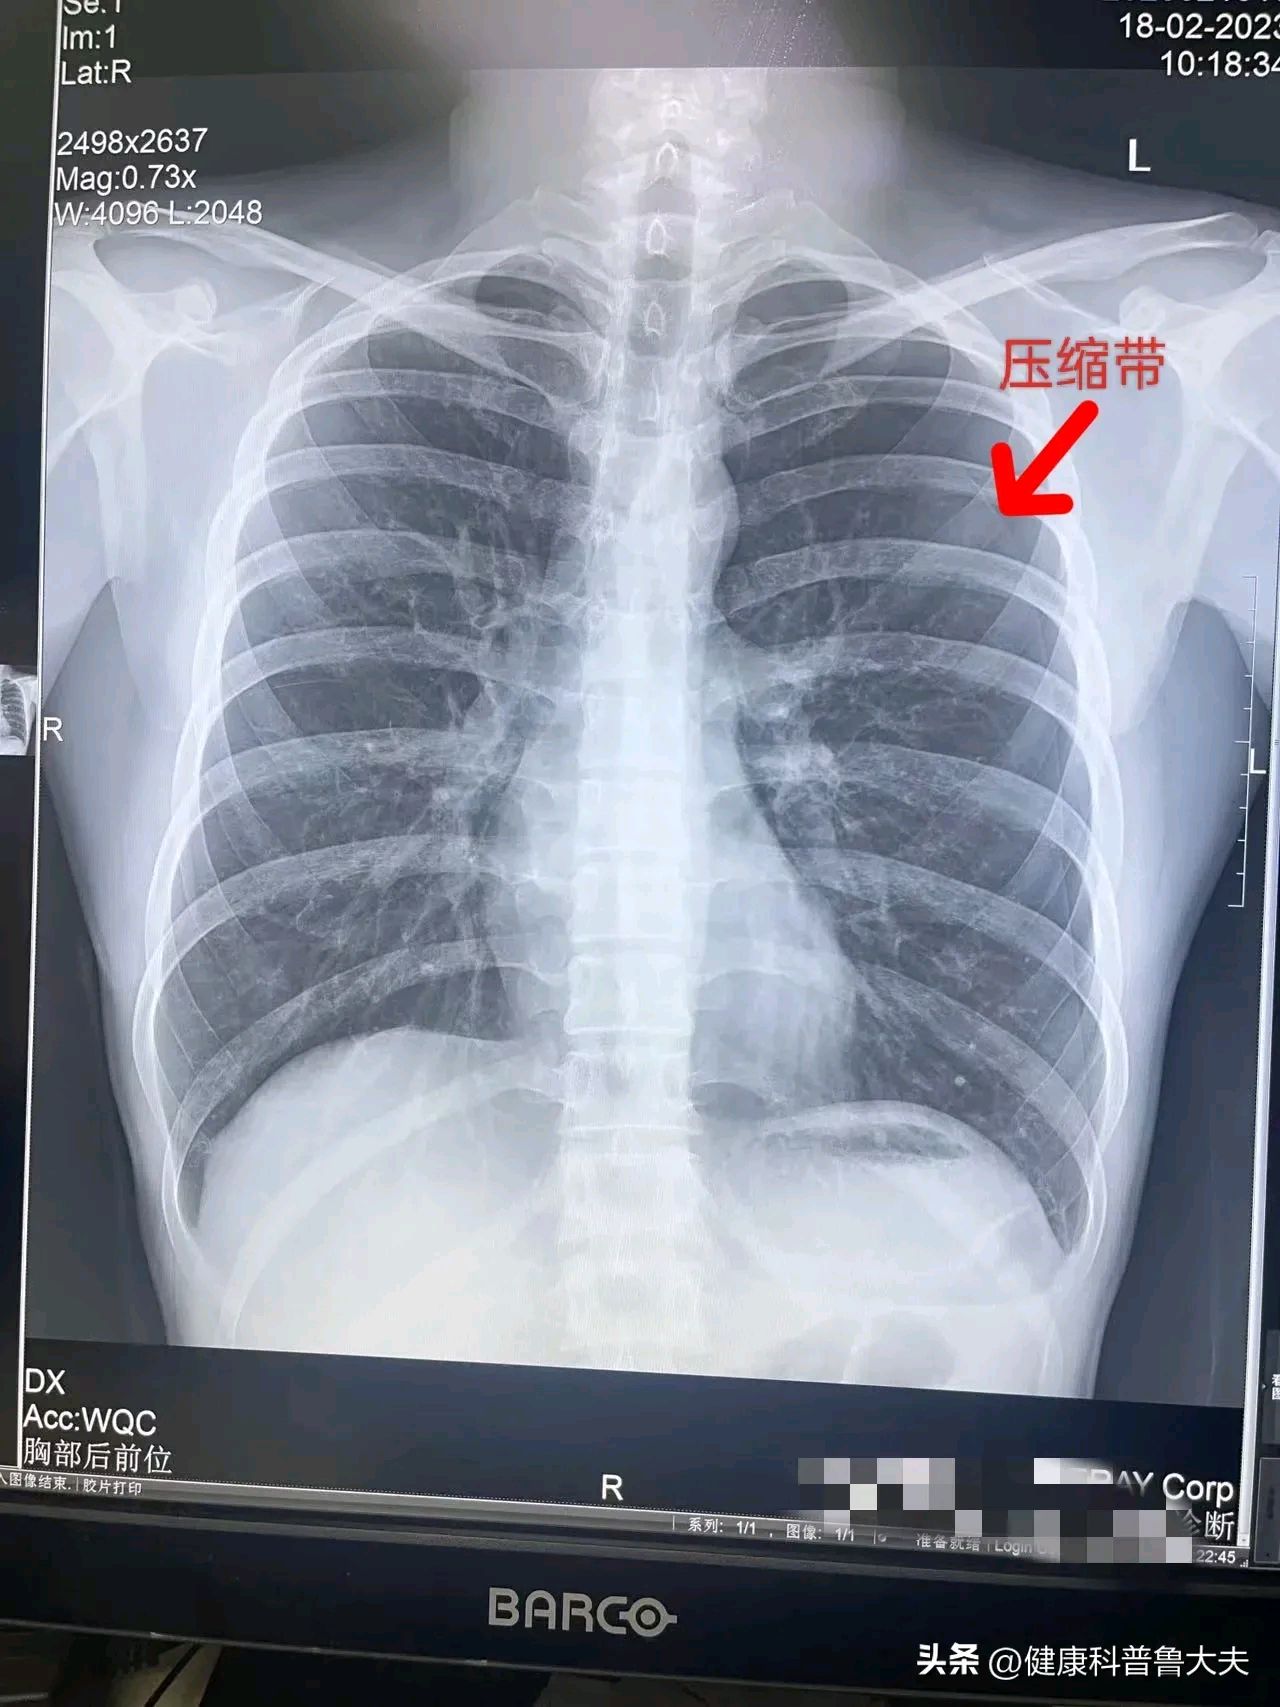 液气胸x线胸片图解图片